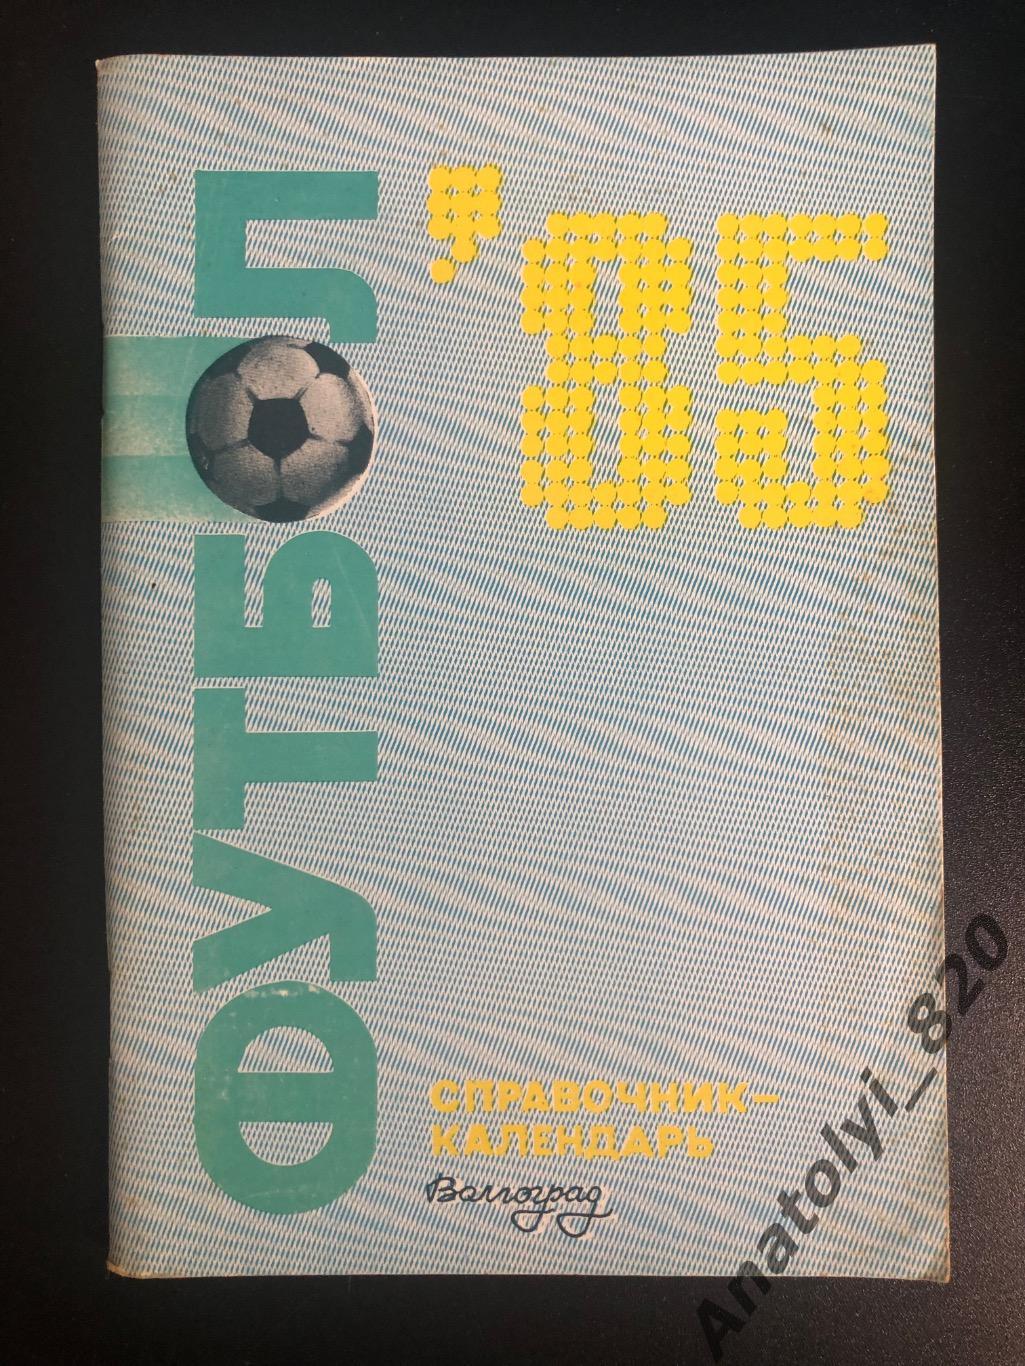 Волгоград 1985 год календарь - справочник